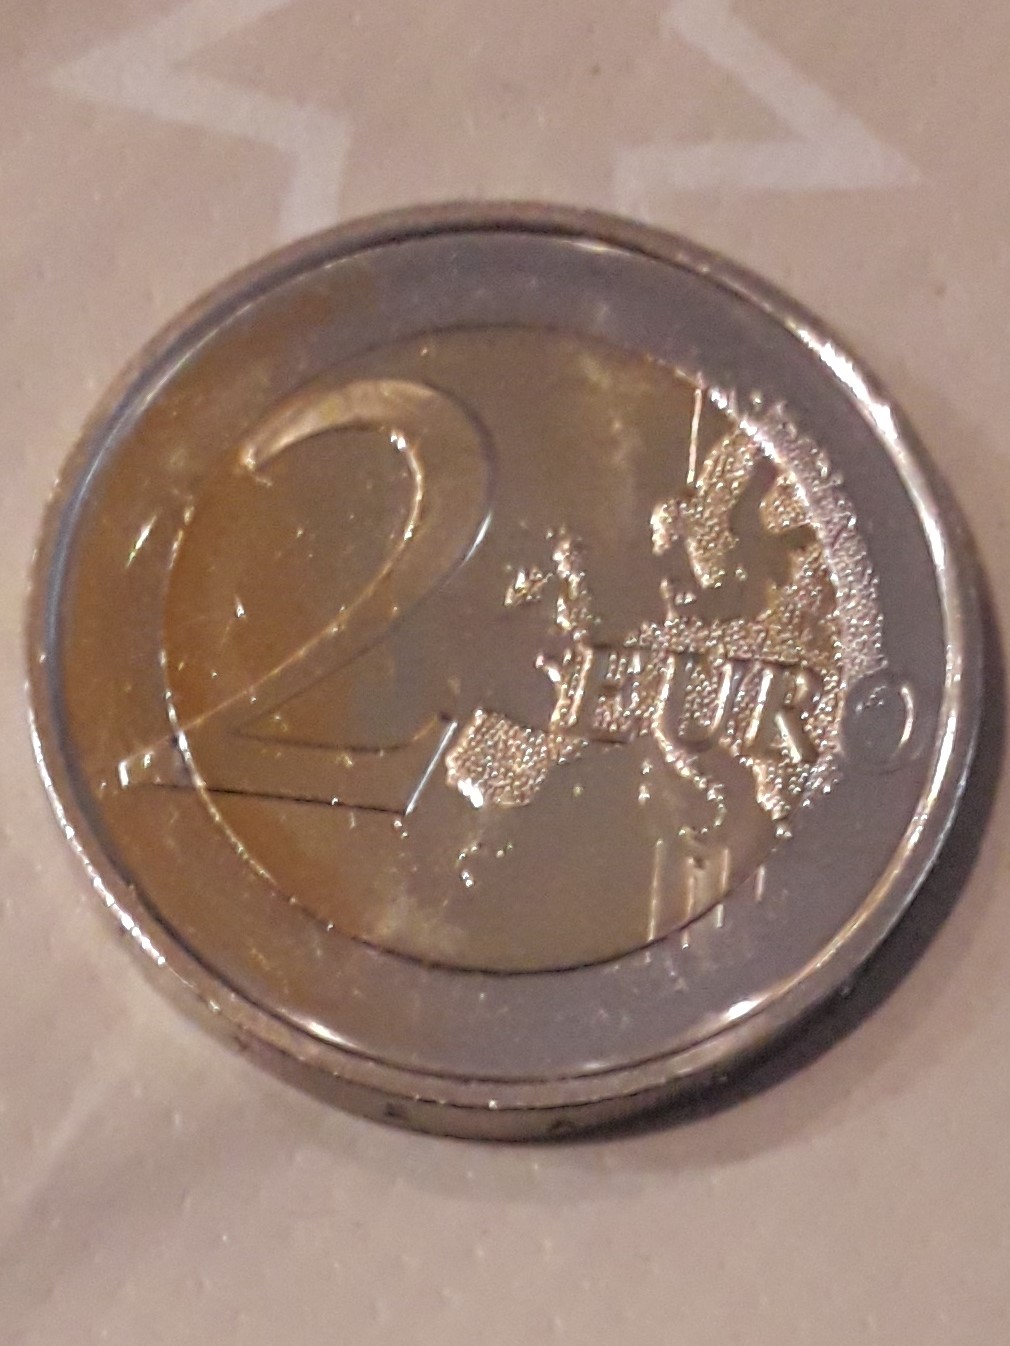 2 euros España 2017 error nuevo - Página 2 20181210